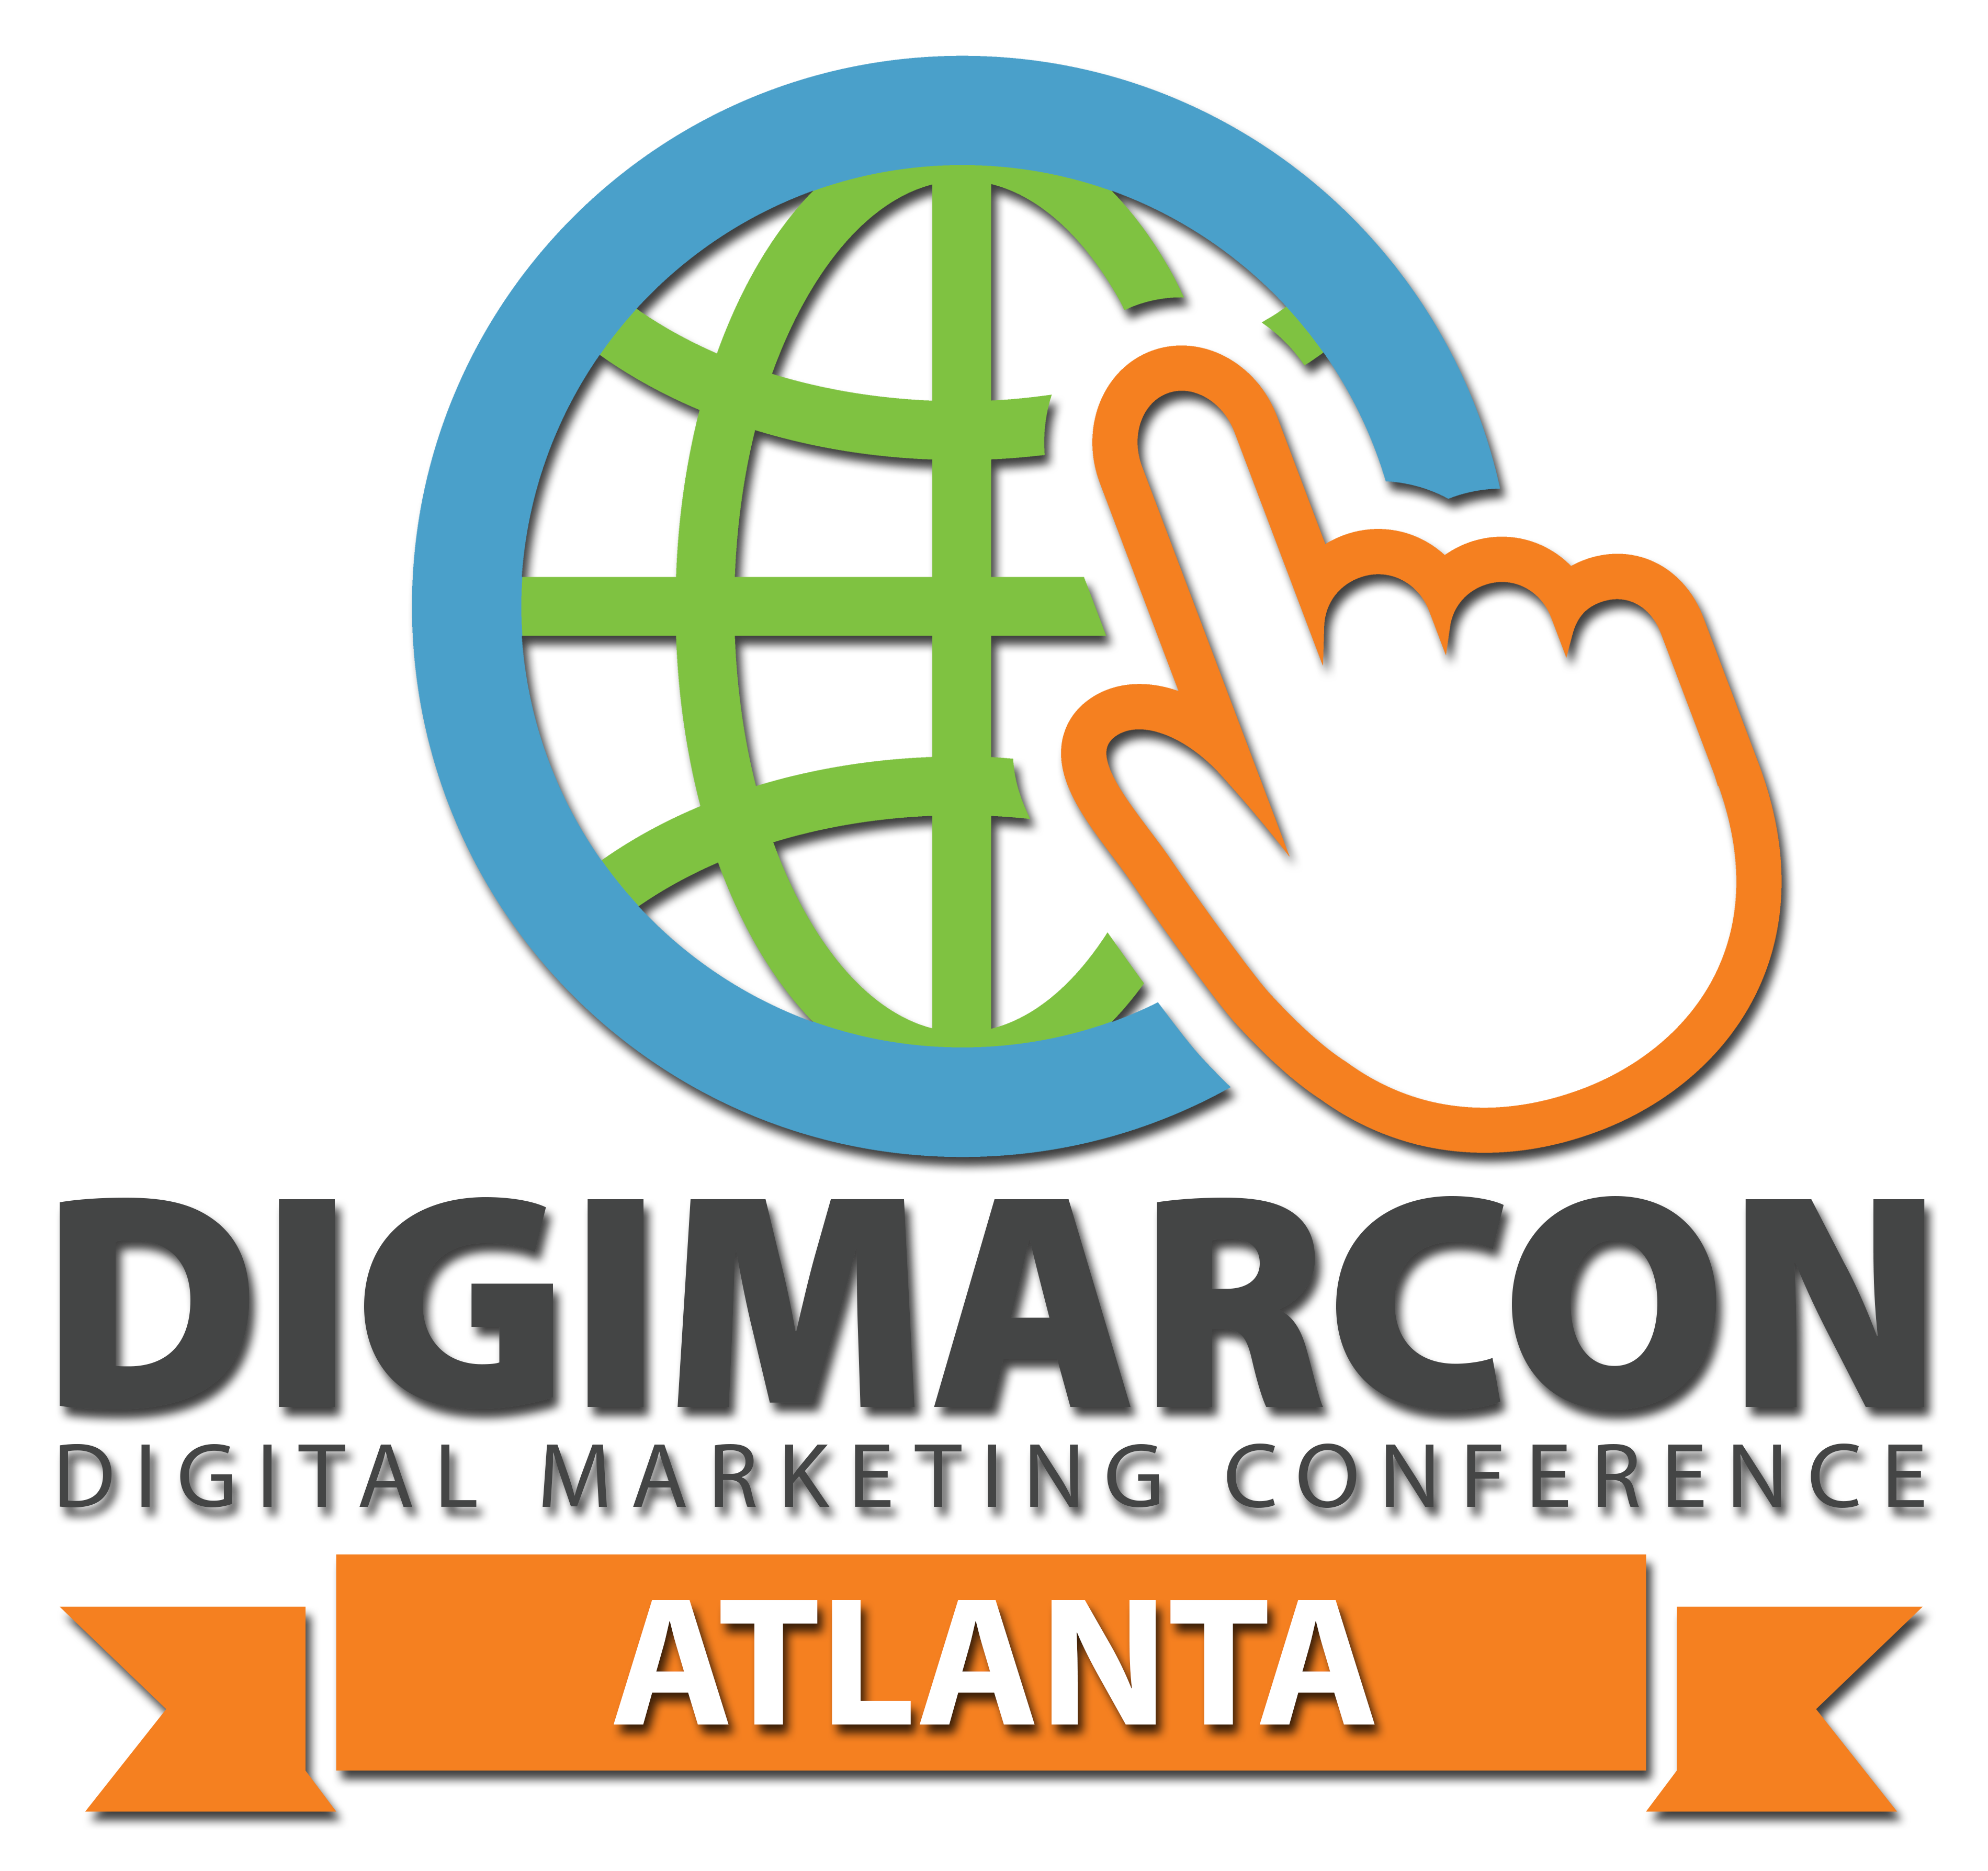 DigiMarCon California – Digital Marketing Conference & Exhibition